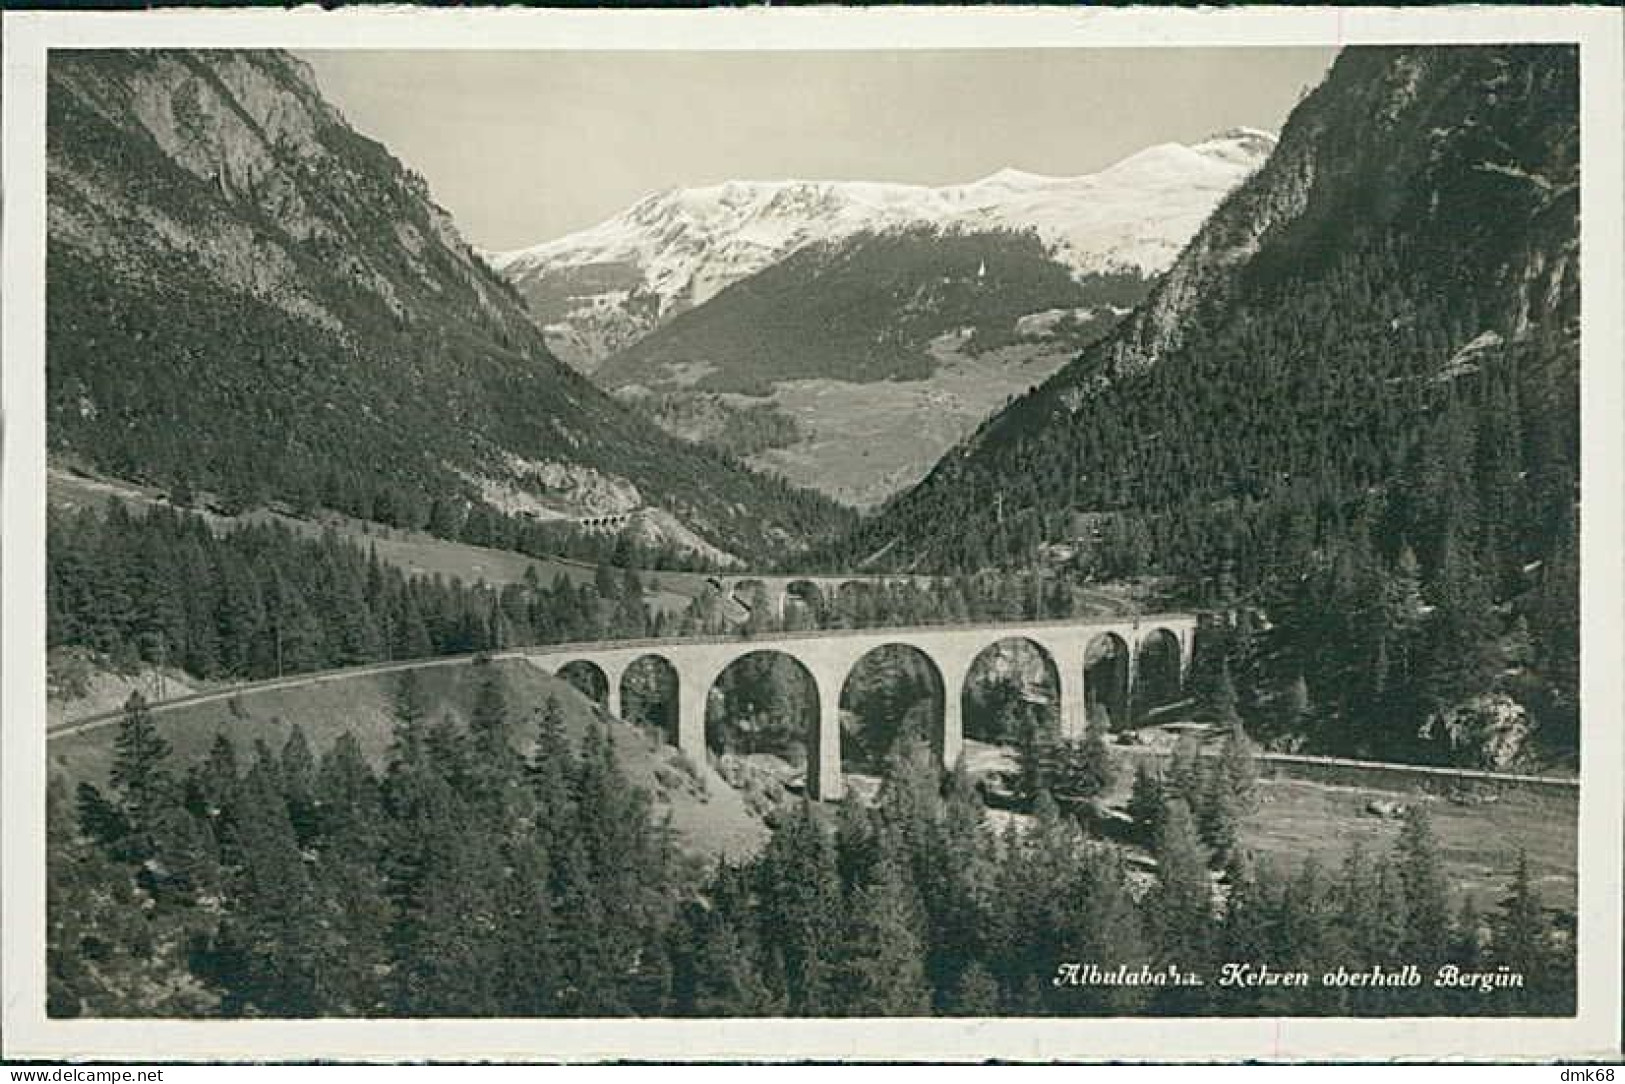 SWITZERLAND - ALBULABAHN - KEHREN OBERHALB BERGÜN - EDITION PHOTOGLOB - 1930s (16813) - Bergün/Bravuogn